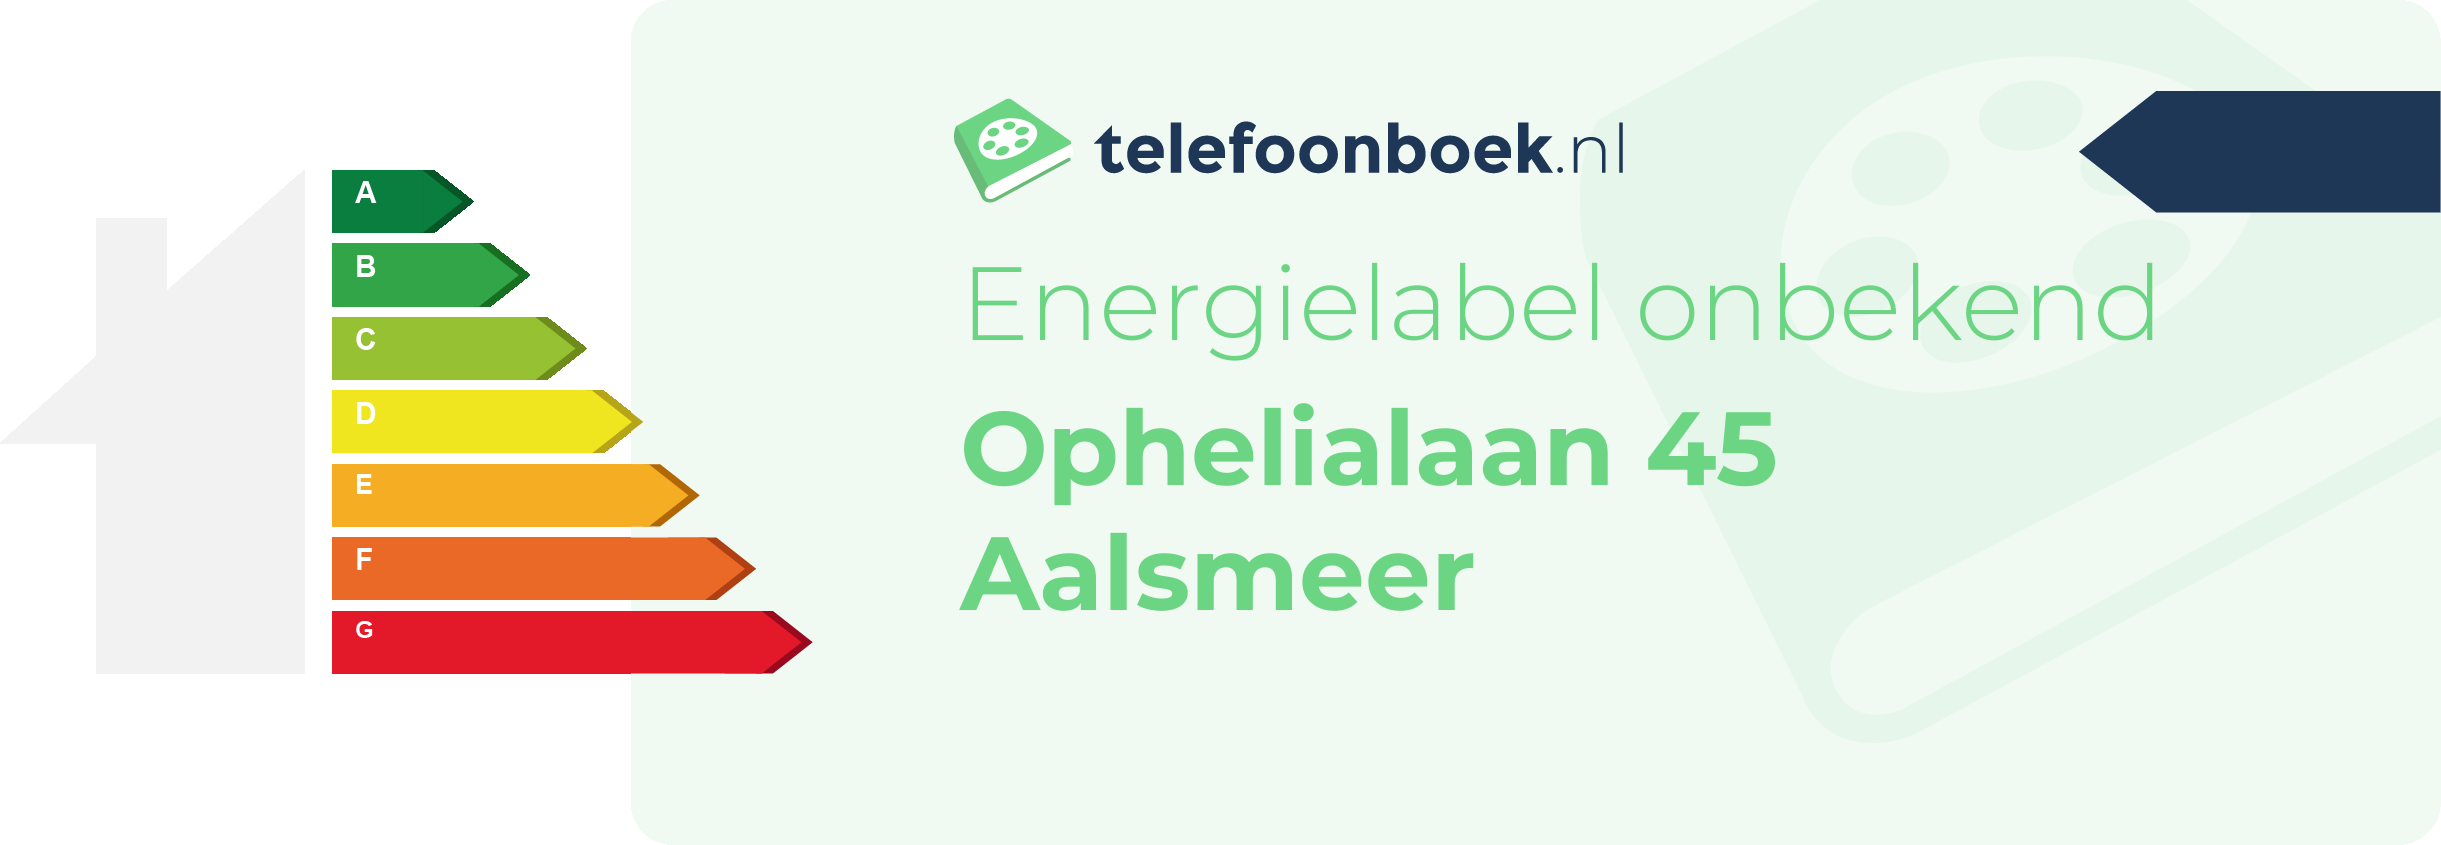 Energielabel Ophelialaan 45 Aalsmeer